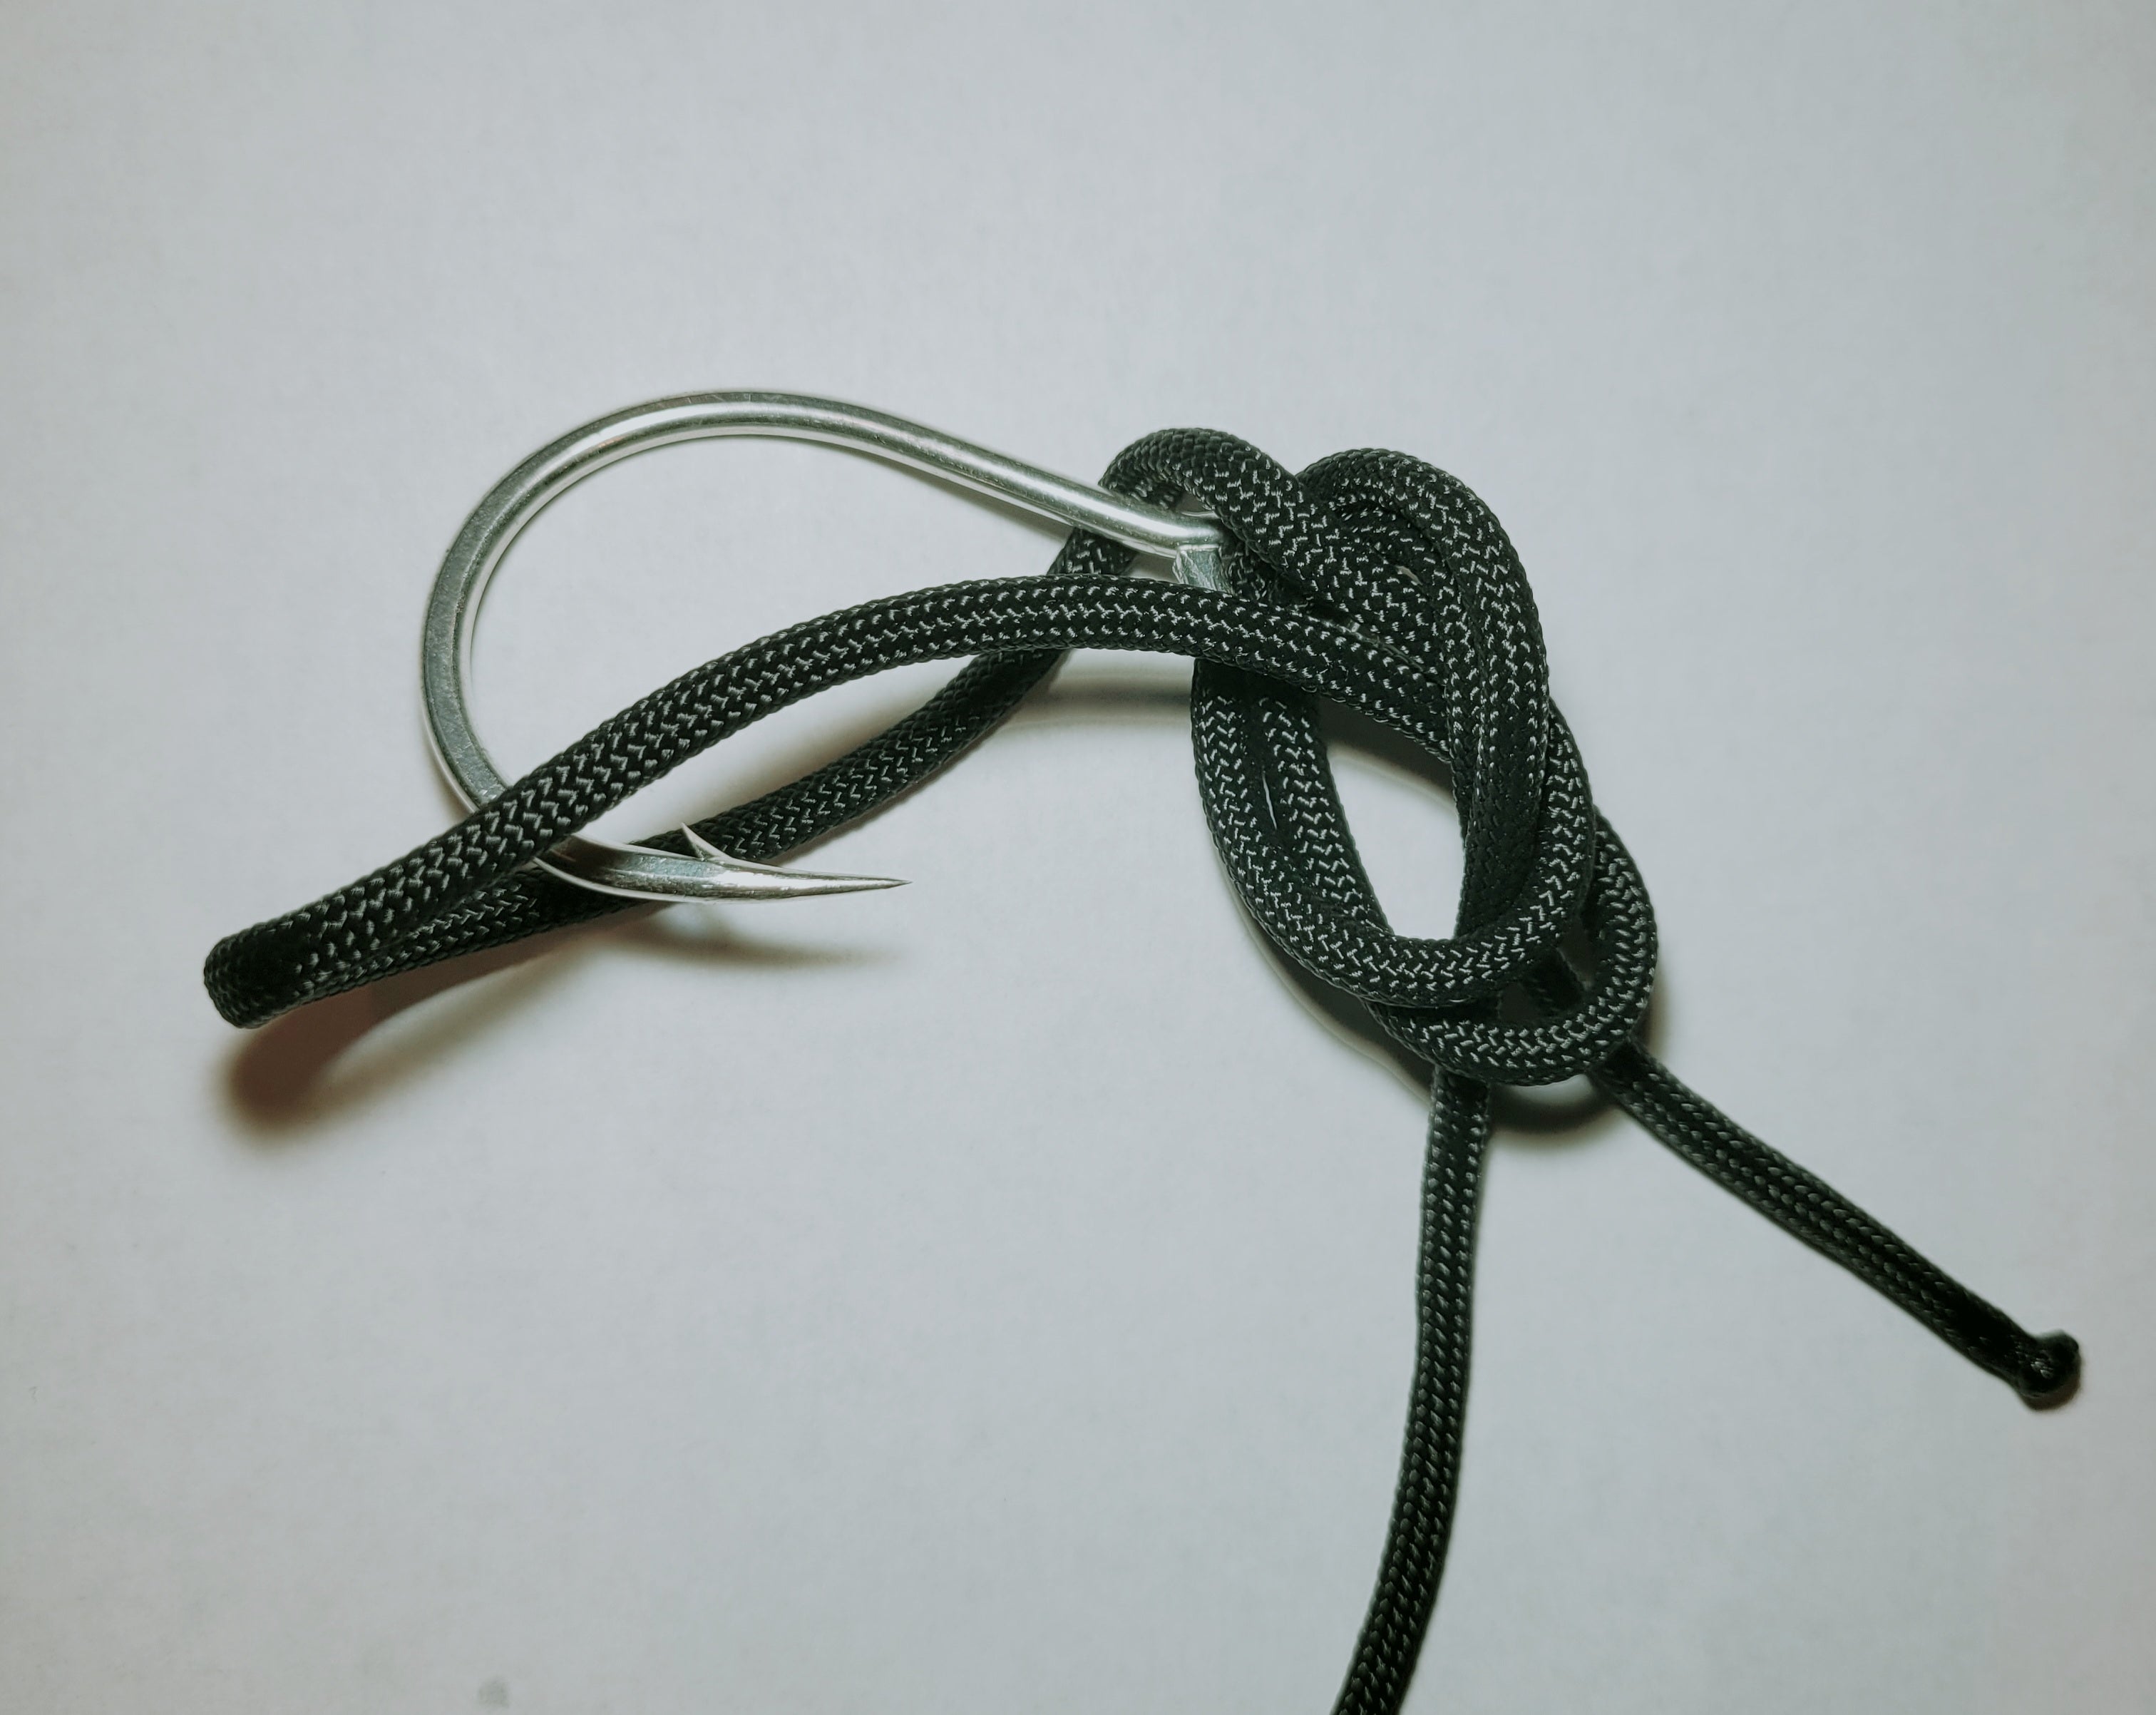 palomar knot fishing knots